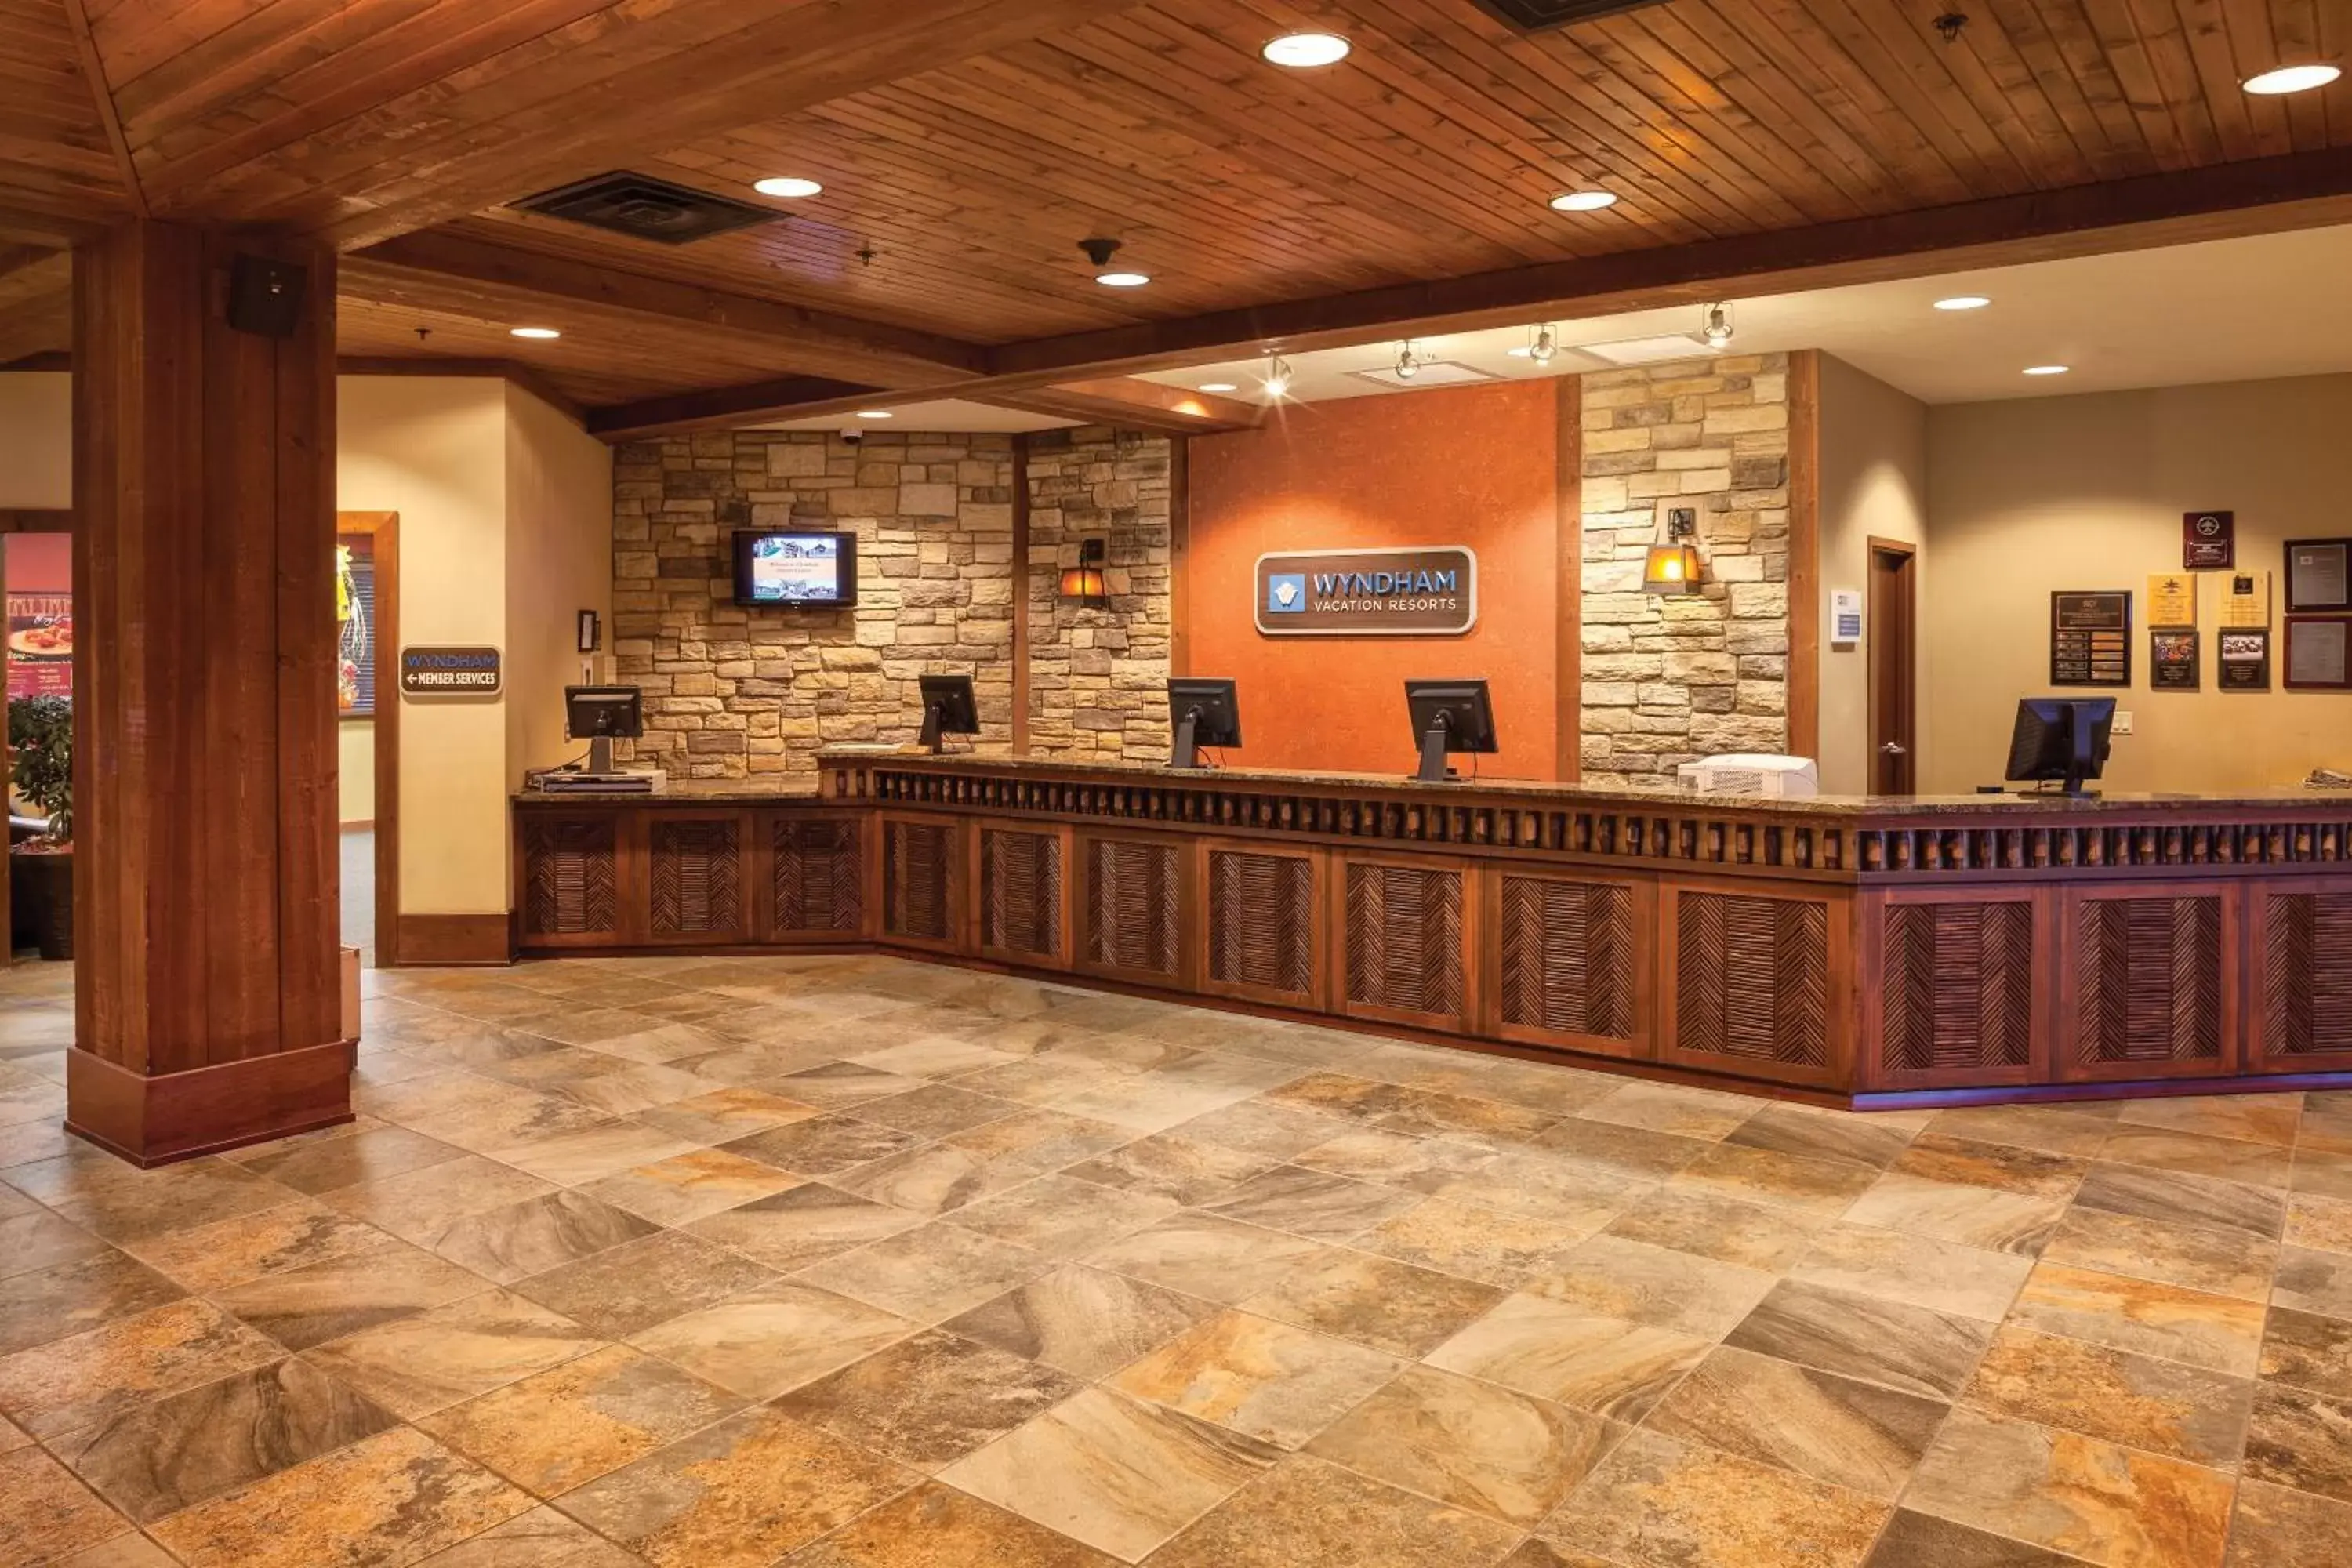 Lobby or reception, Lobby/Reception in Club Wyndham Glacier Canyon